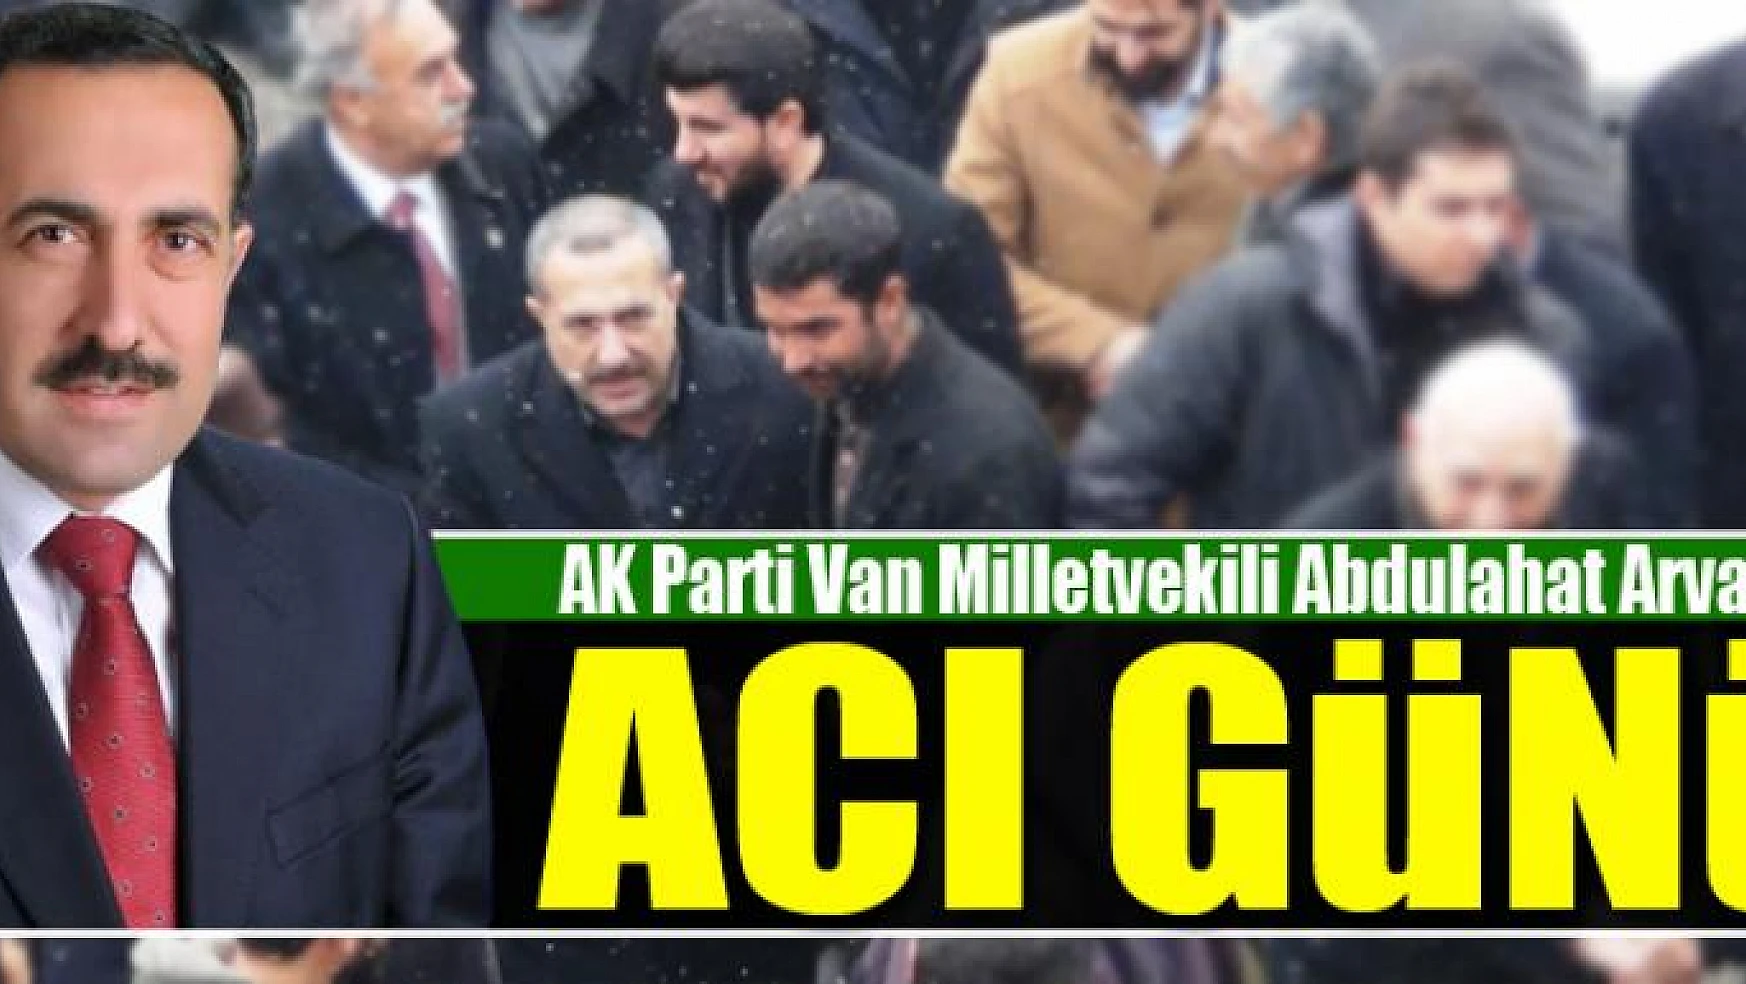 AK Parti Van Milletvekili Abdulahat Arvas'ın acı günü